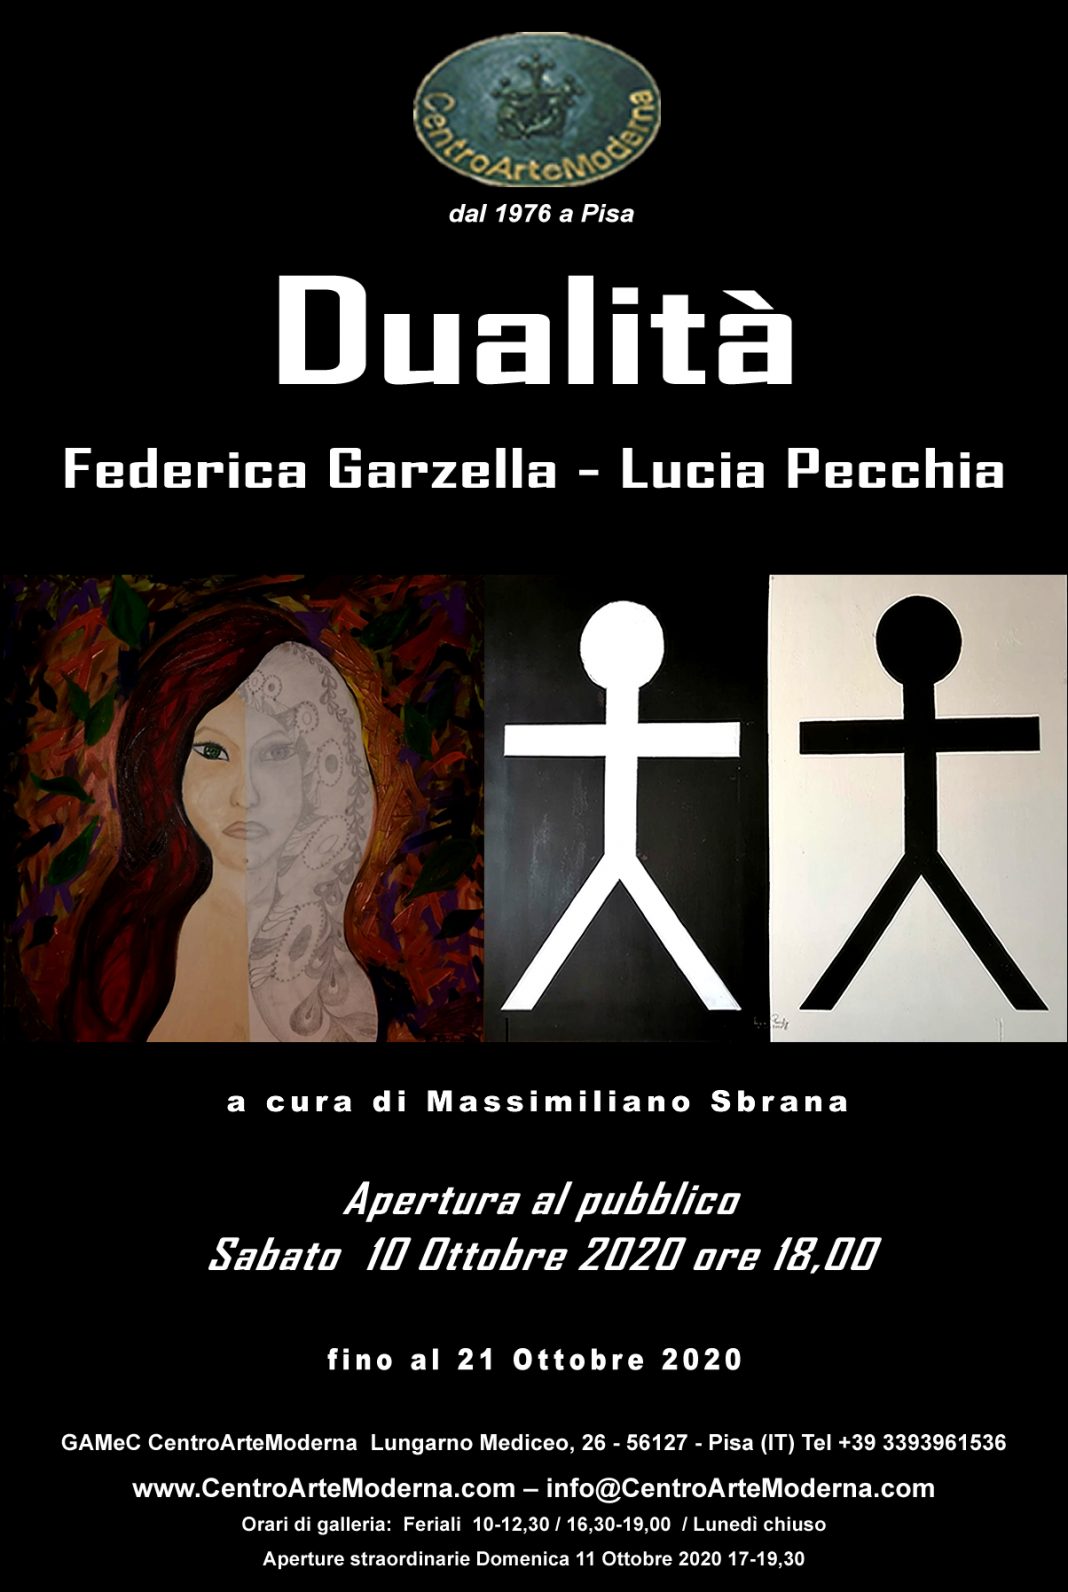 Federica Garzella / Lucia Pecchia – Dualitàhttps://www.exibart.com/repository/media/formidable/11/invito-dualità-2020-1068x1592.jpg